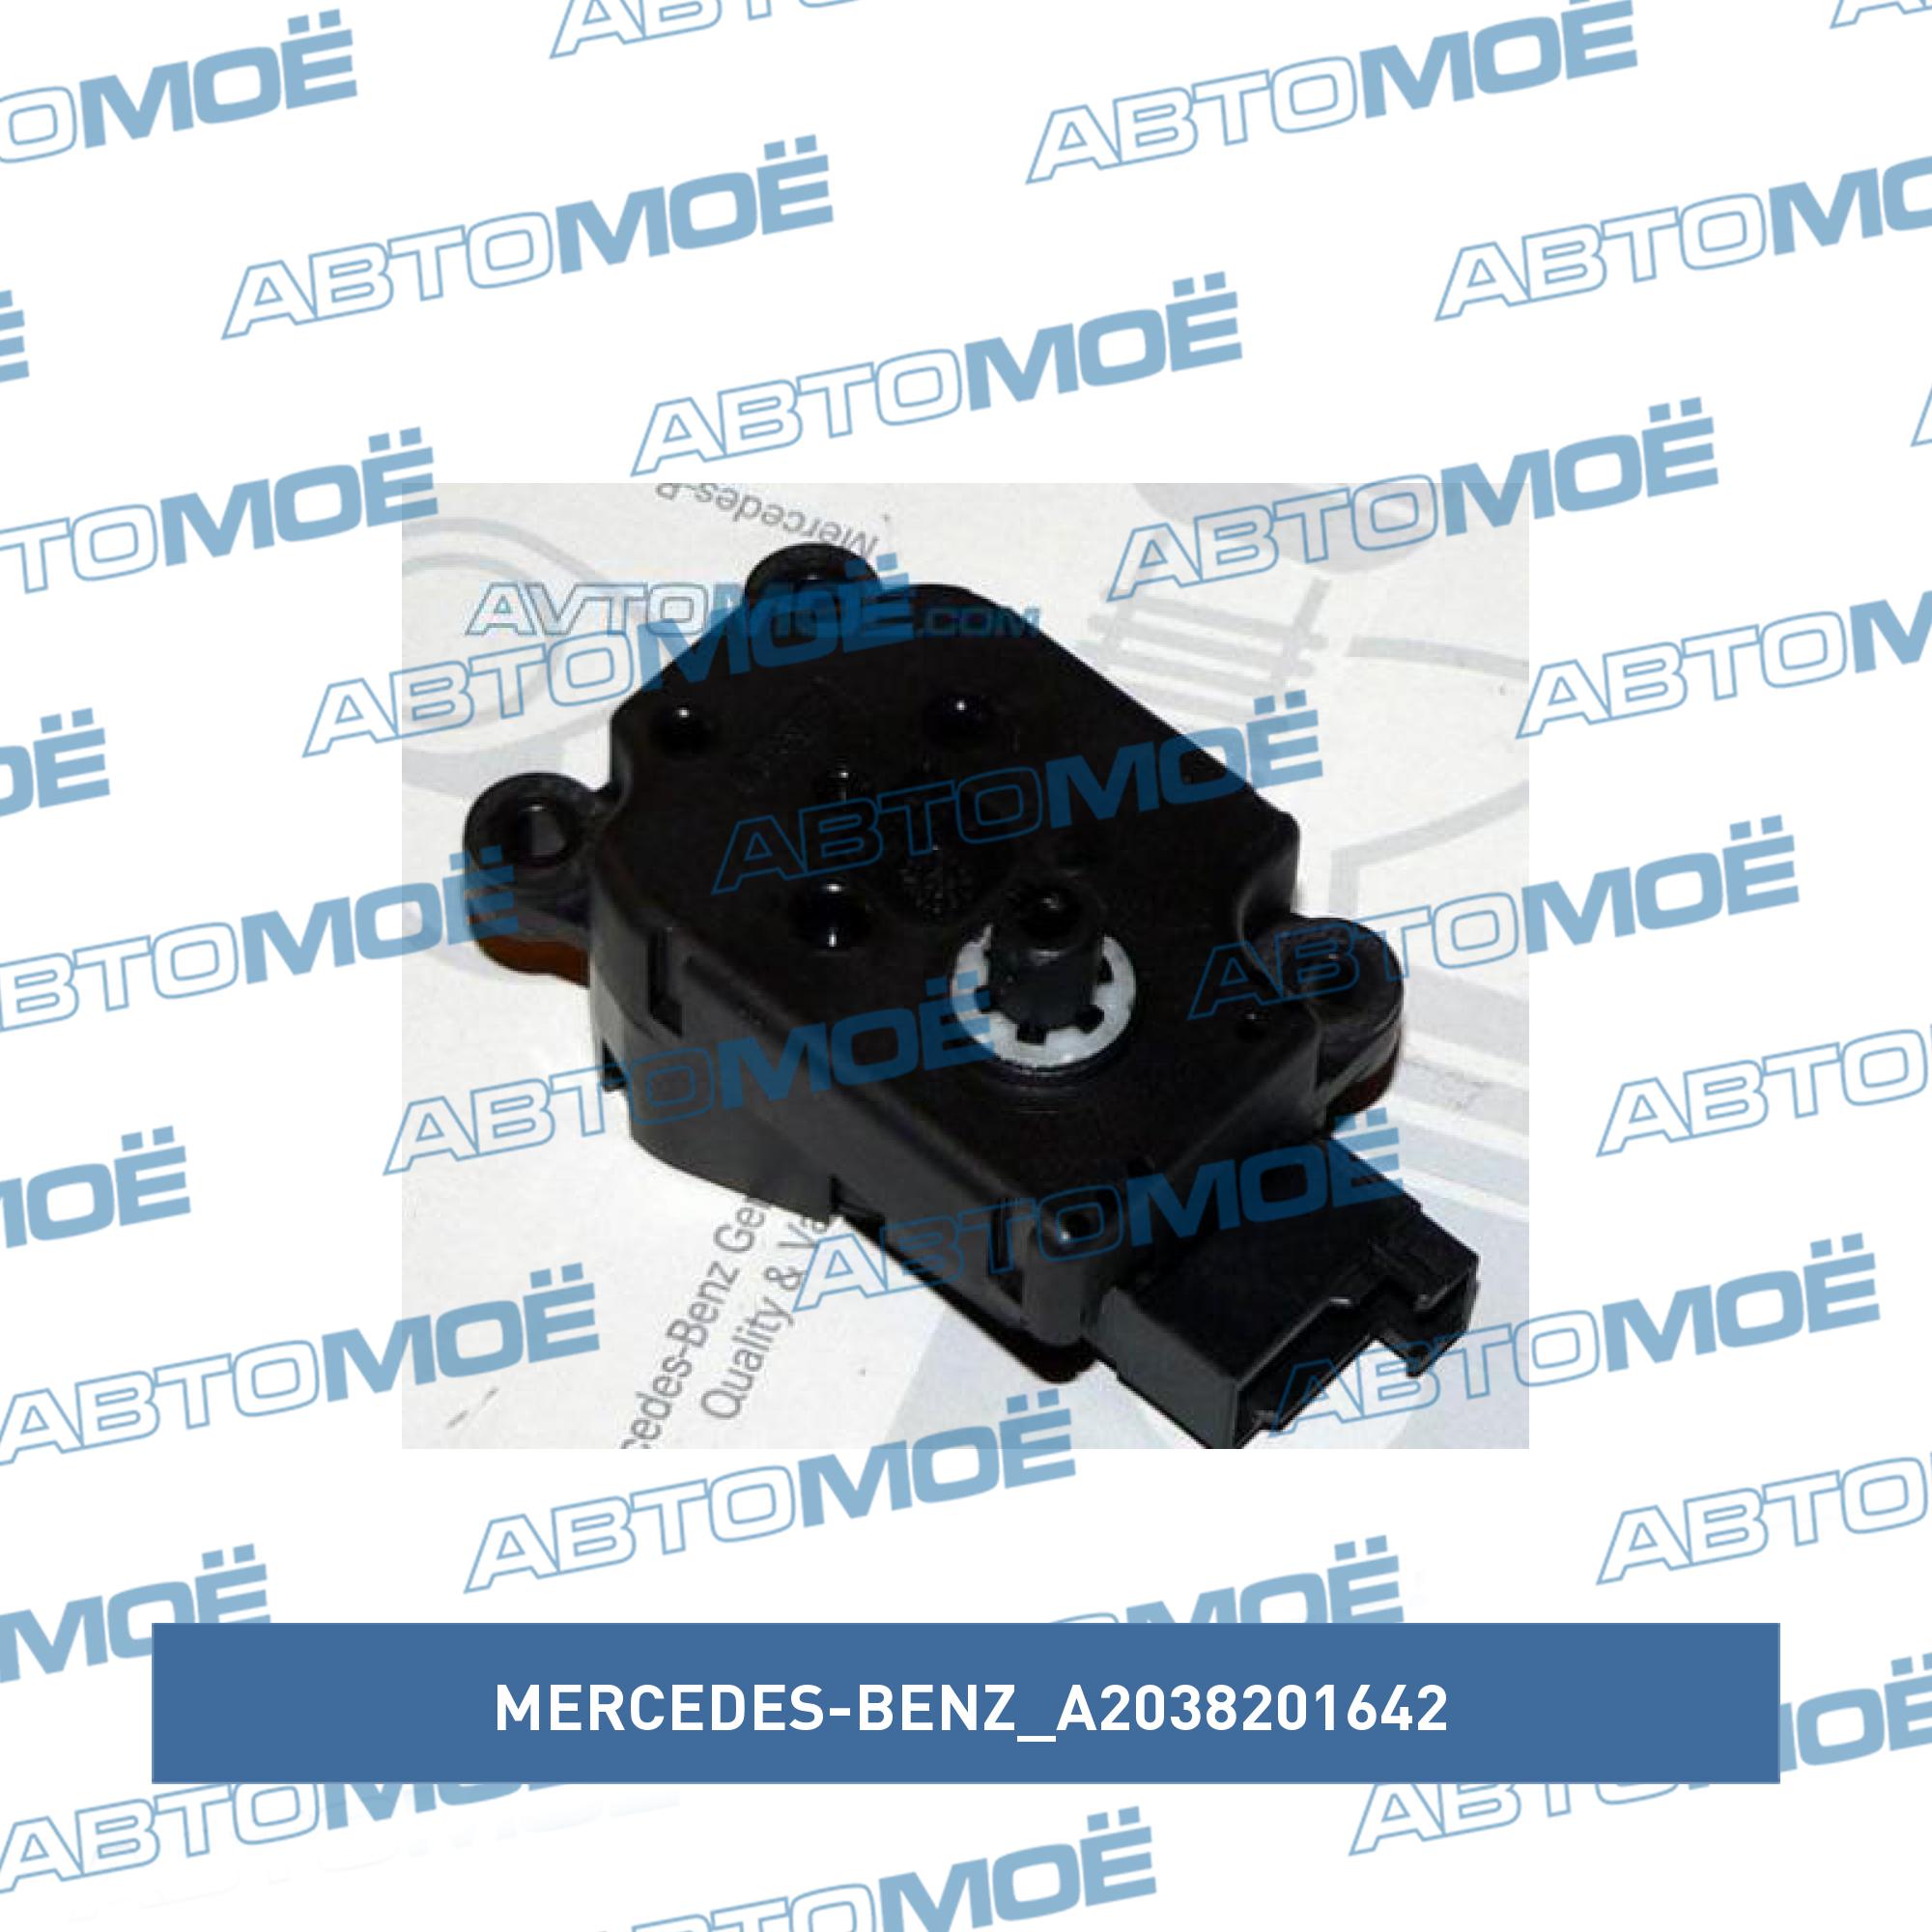 Мотор заслонки отопителя MERCEDES-BENZ A2038201642